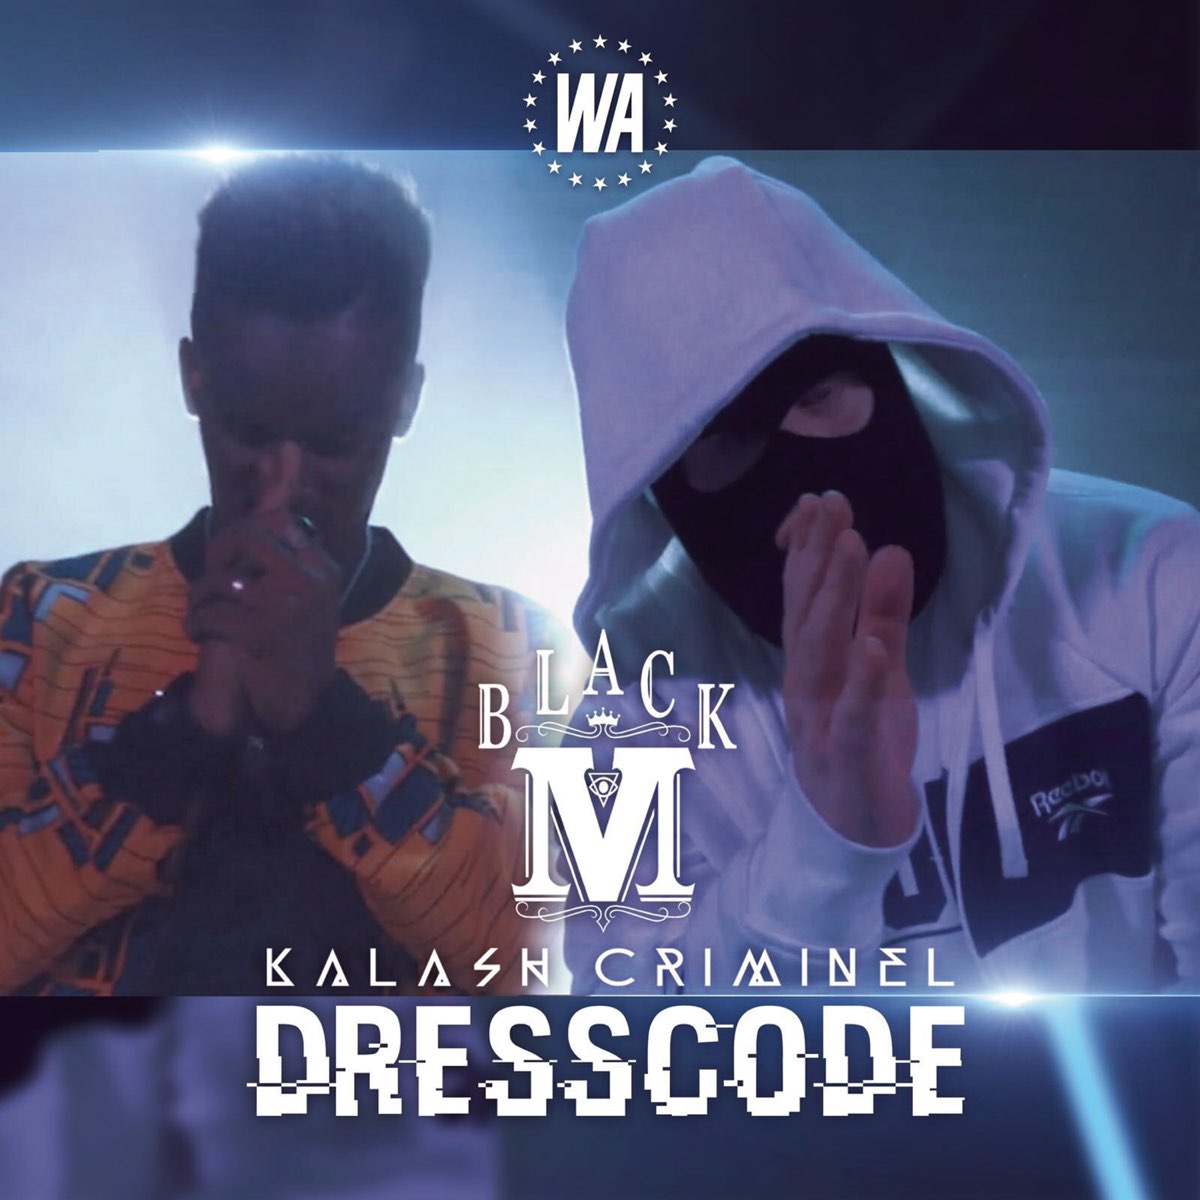 Dress Code (feat. Kalash Criminel) - Single par Black M sur Apple Music